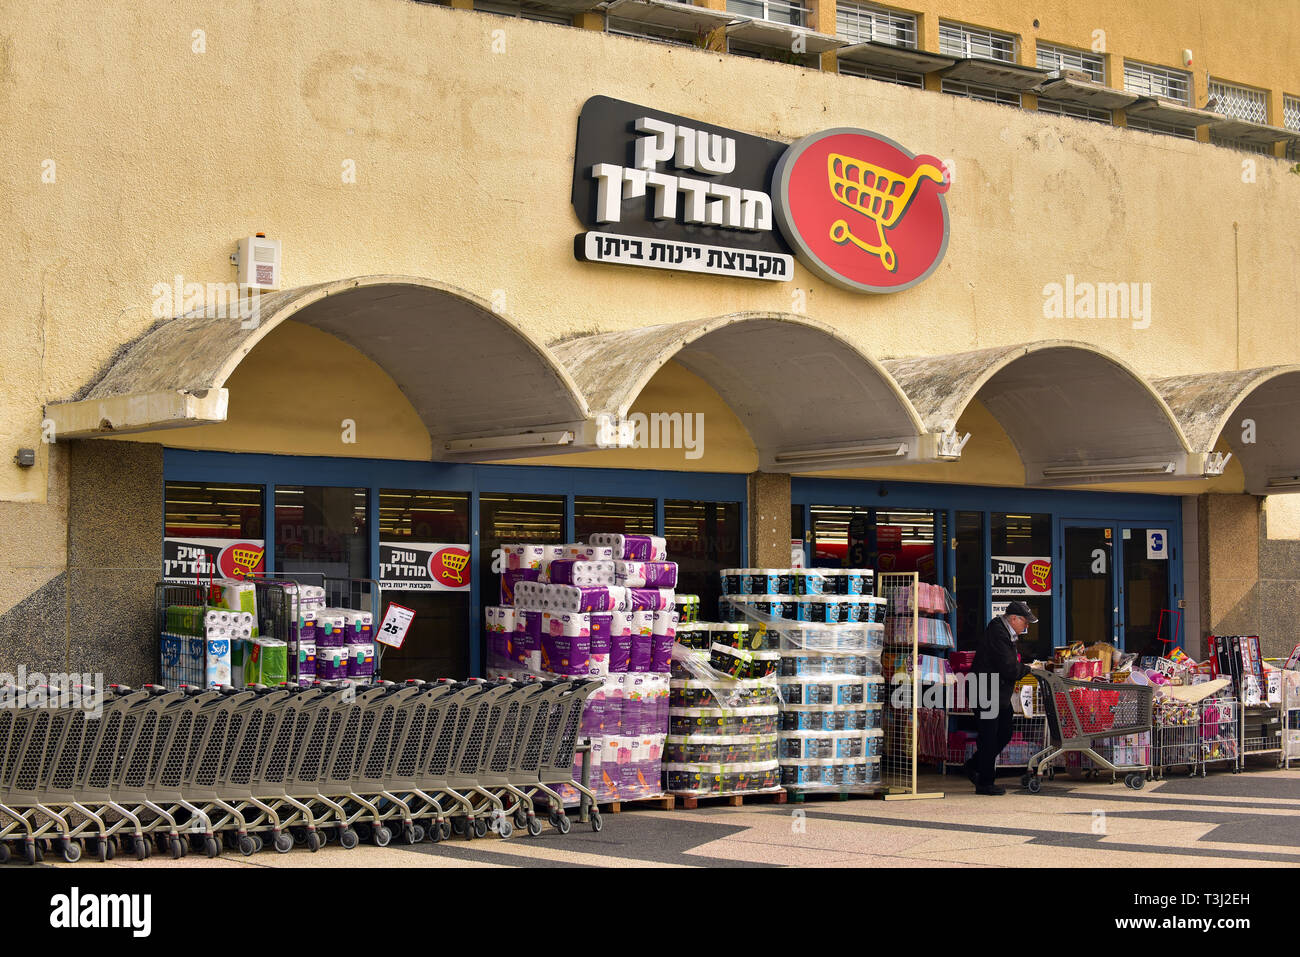 Entrée d'un supermarché casher israélien Banque D'Images